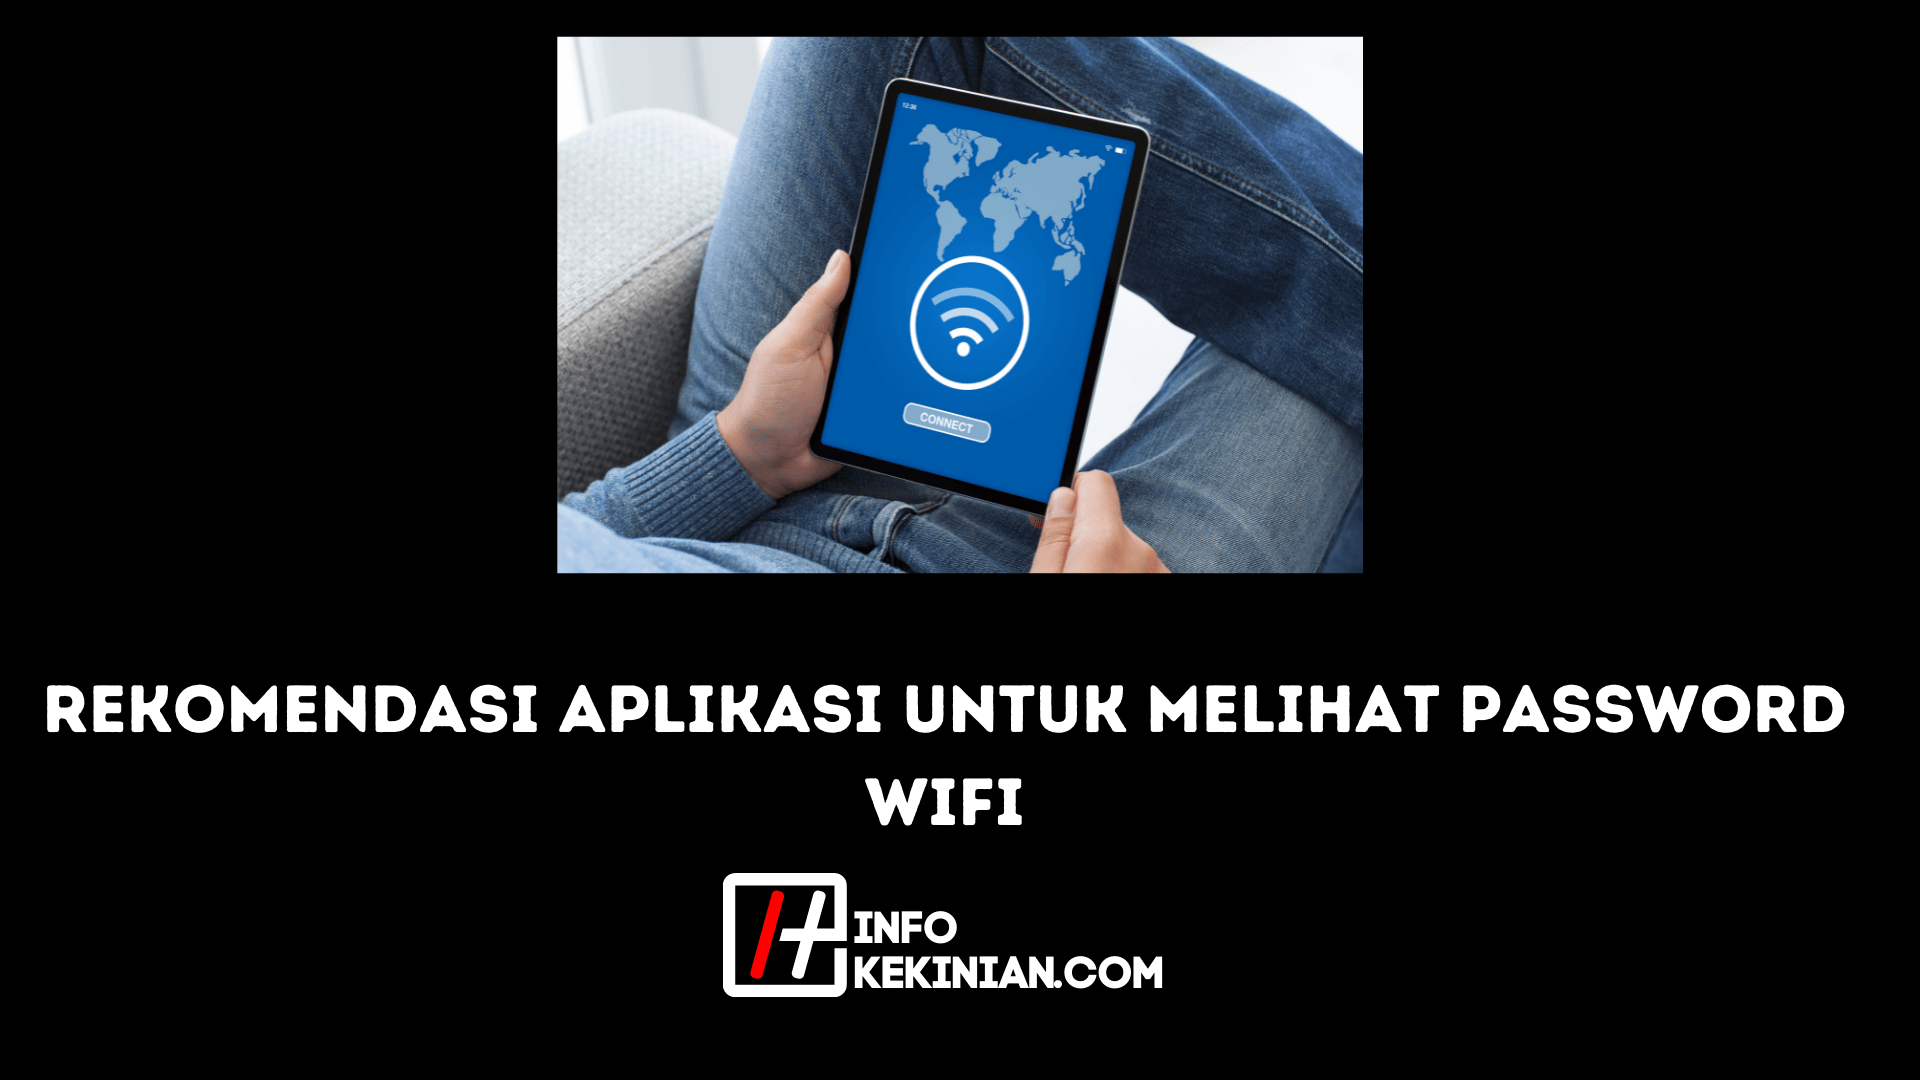 Rekomendasi aplikasi untuk melihat password wifi